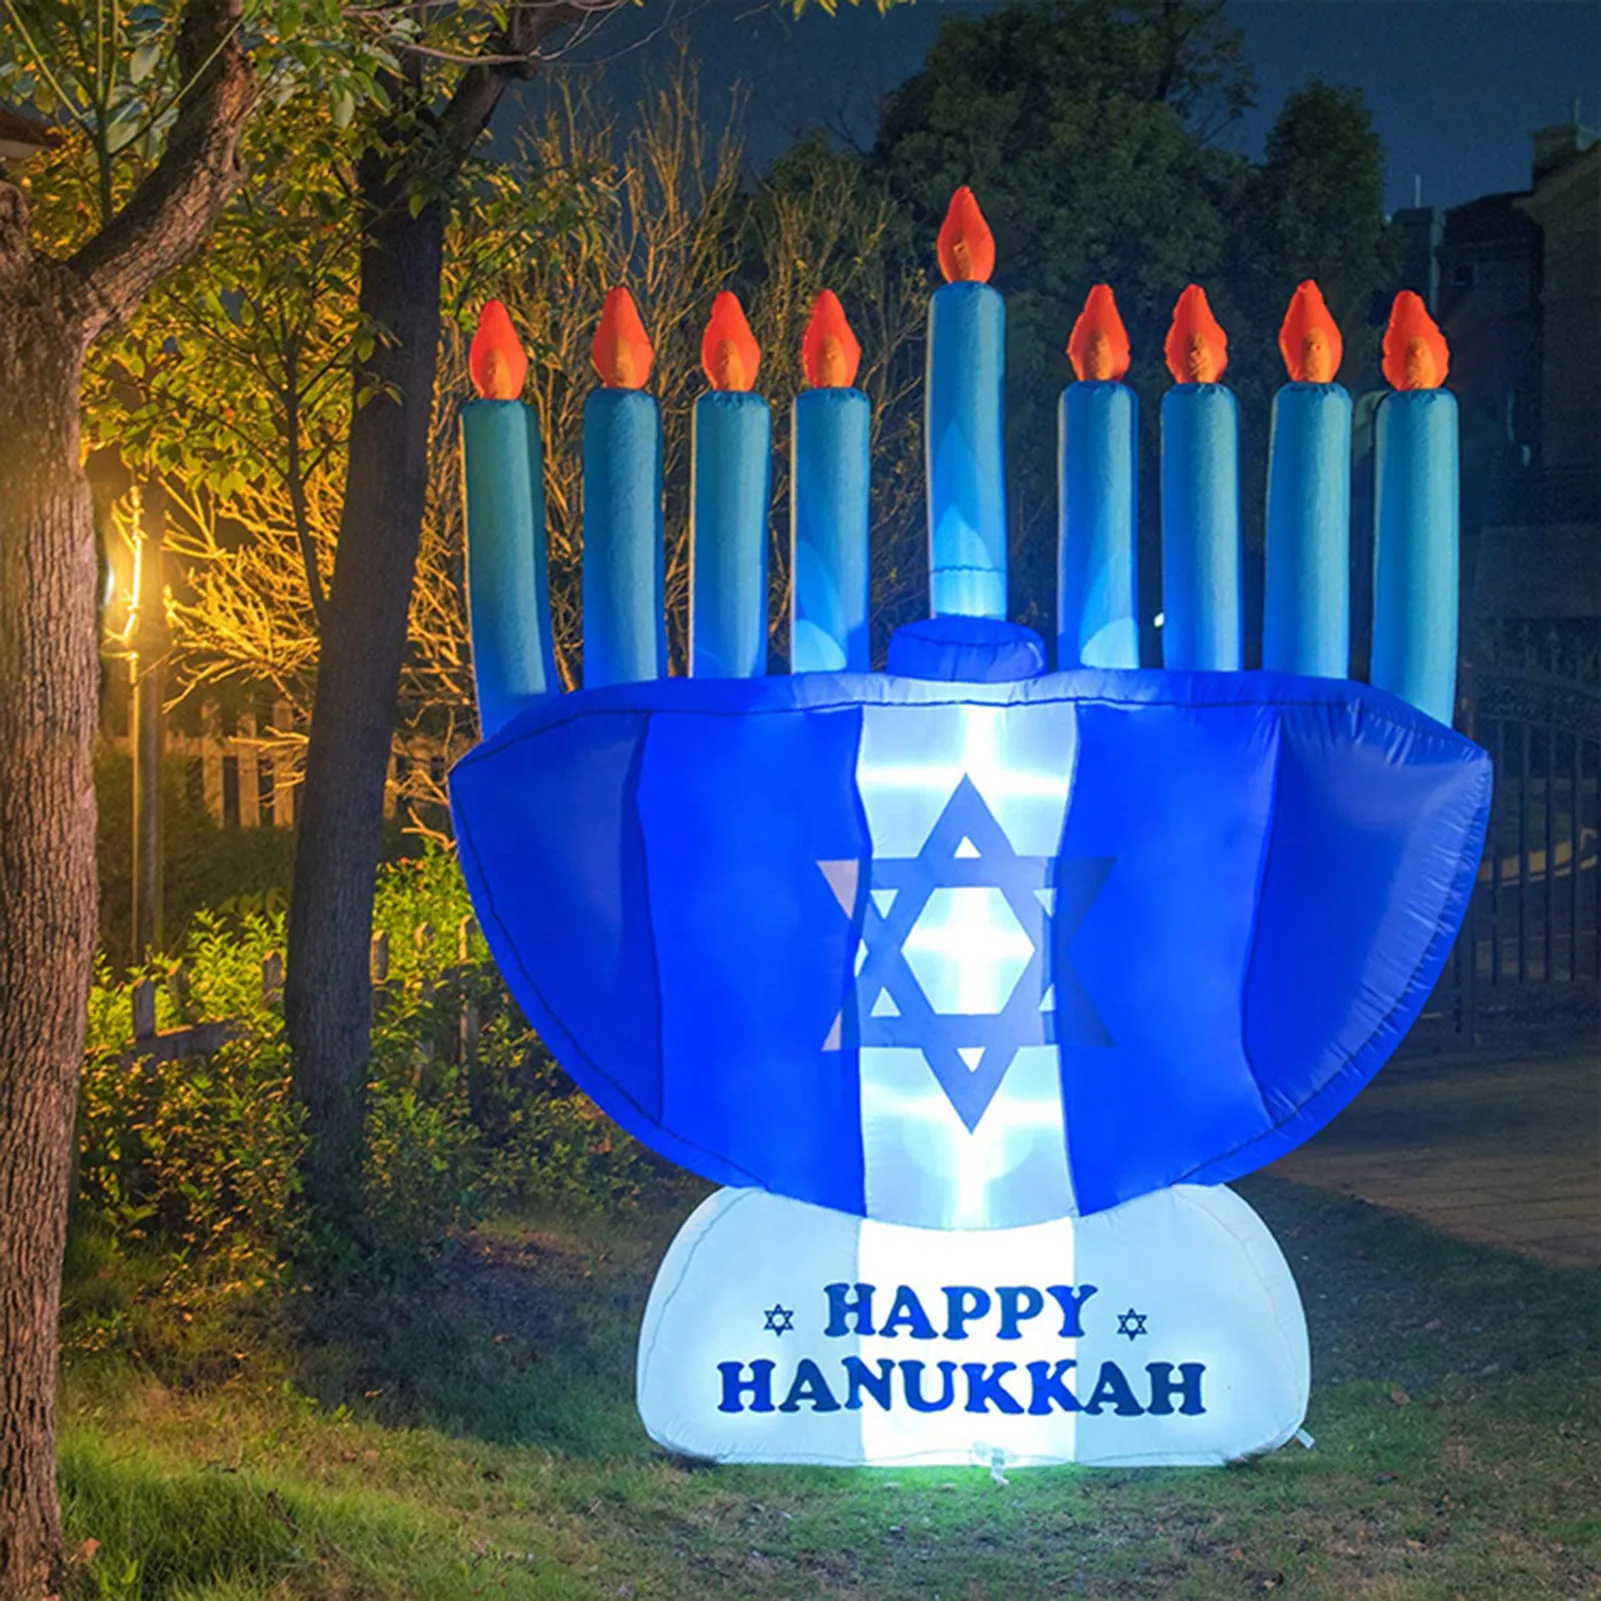 Hanukkah Decoration Iatable Hanukkah Menorah Balloon For Home Outdoor Hannukah Lights Ornaments Home Outdoor Decor 2022